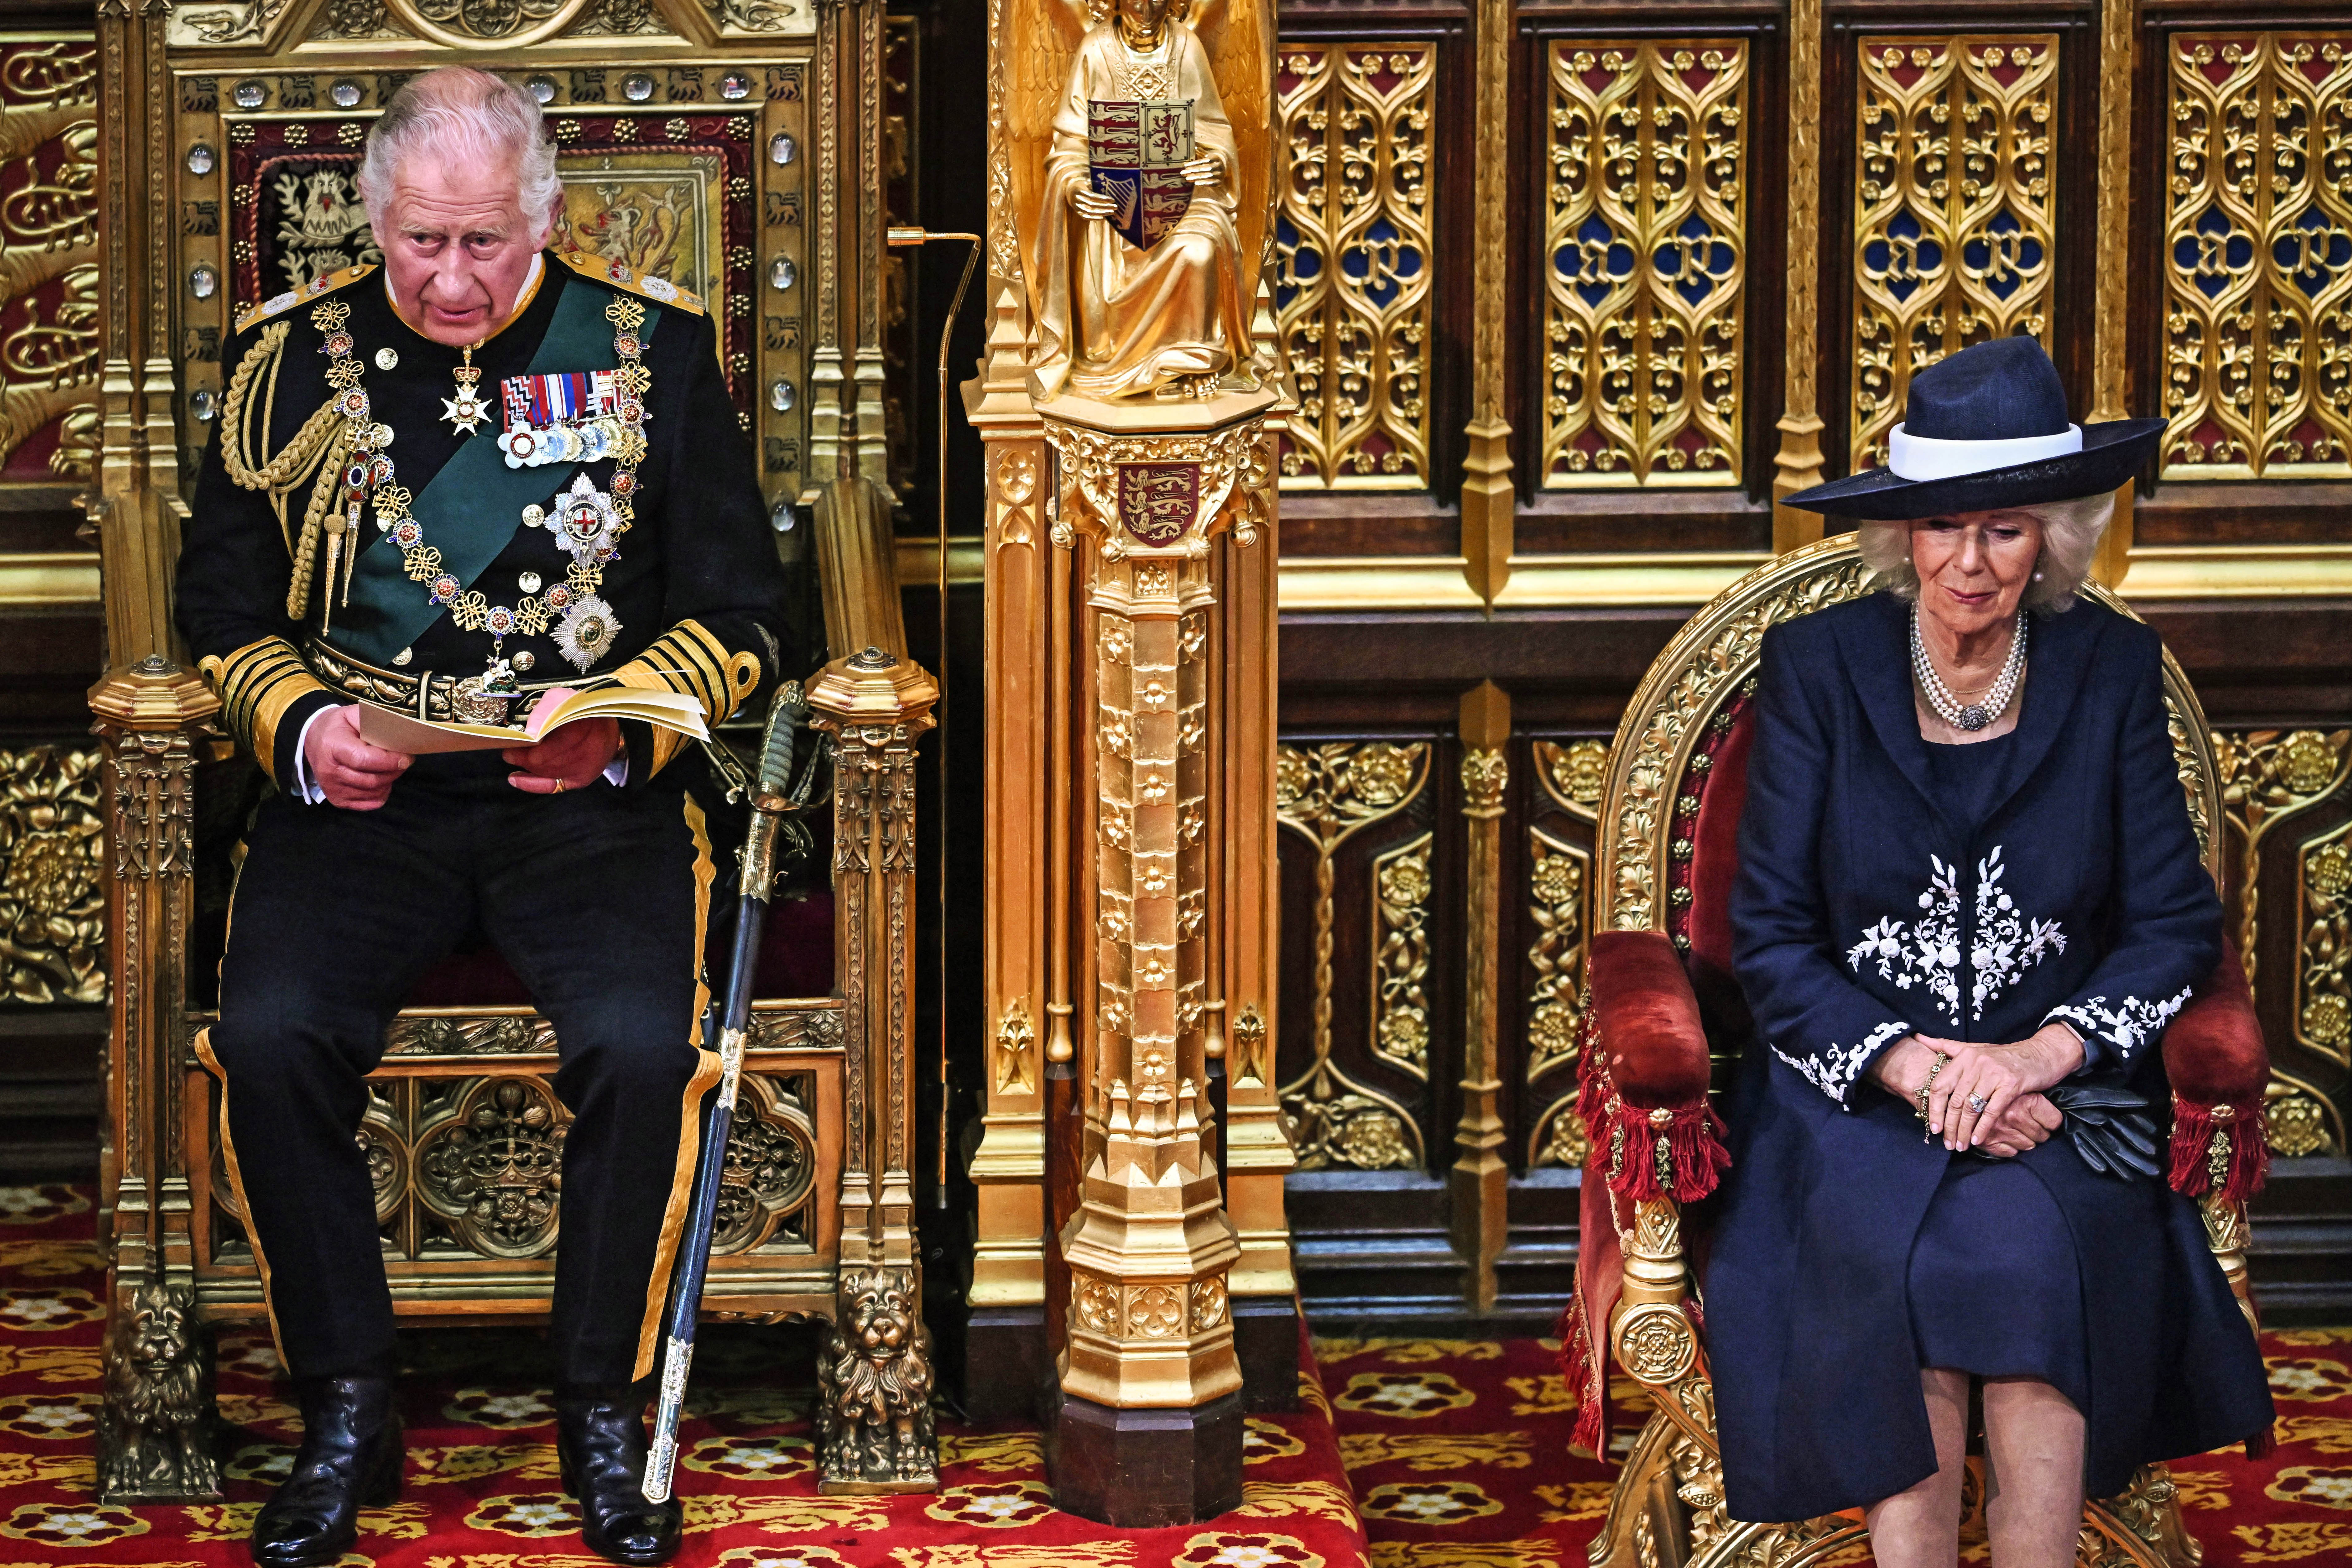 Le Prince Charles lit le discours de la Reine alors qu'il est assis aux côtés de son épouse Camilla, duchesse de Cornouailles, dans la chambre de la Chambre des Lords, lors de l'ouverture officielle du Parlement, au Palais de Westminster, le 10 mai 2022 à Londres, en Angleterre | Source : Getty Images